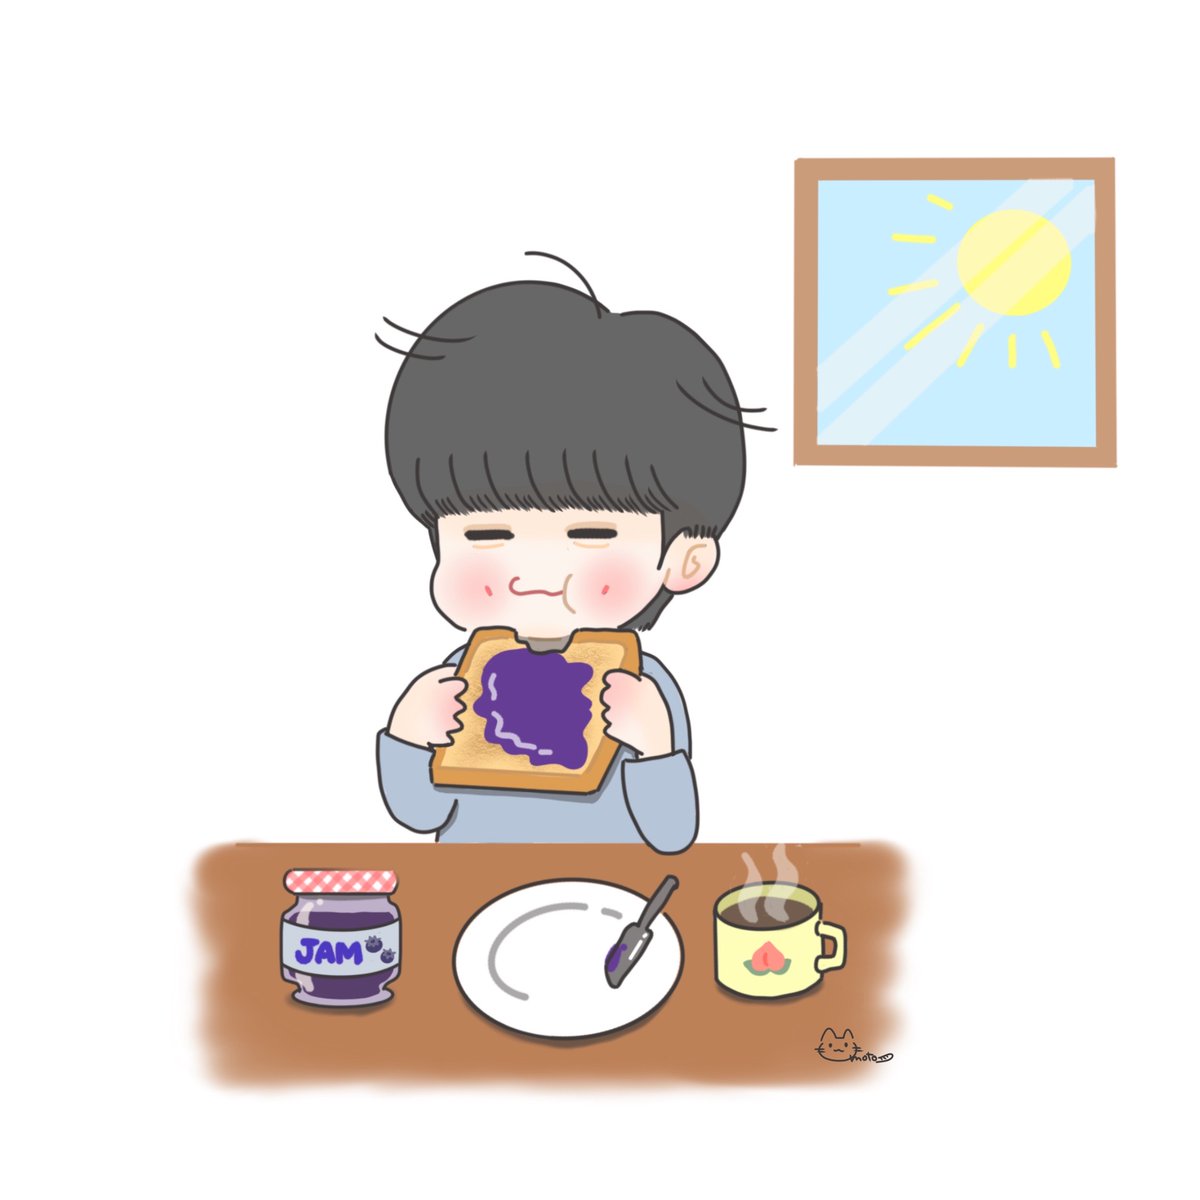 Let's spread jam on bread and eat it🍞
#재현 #jaehyun #NCTfanart